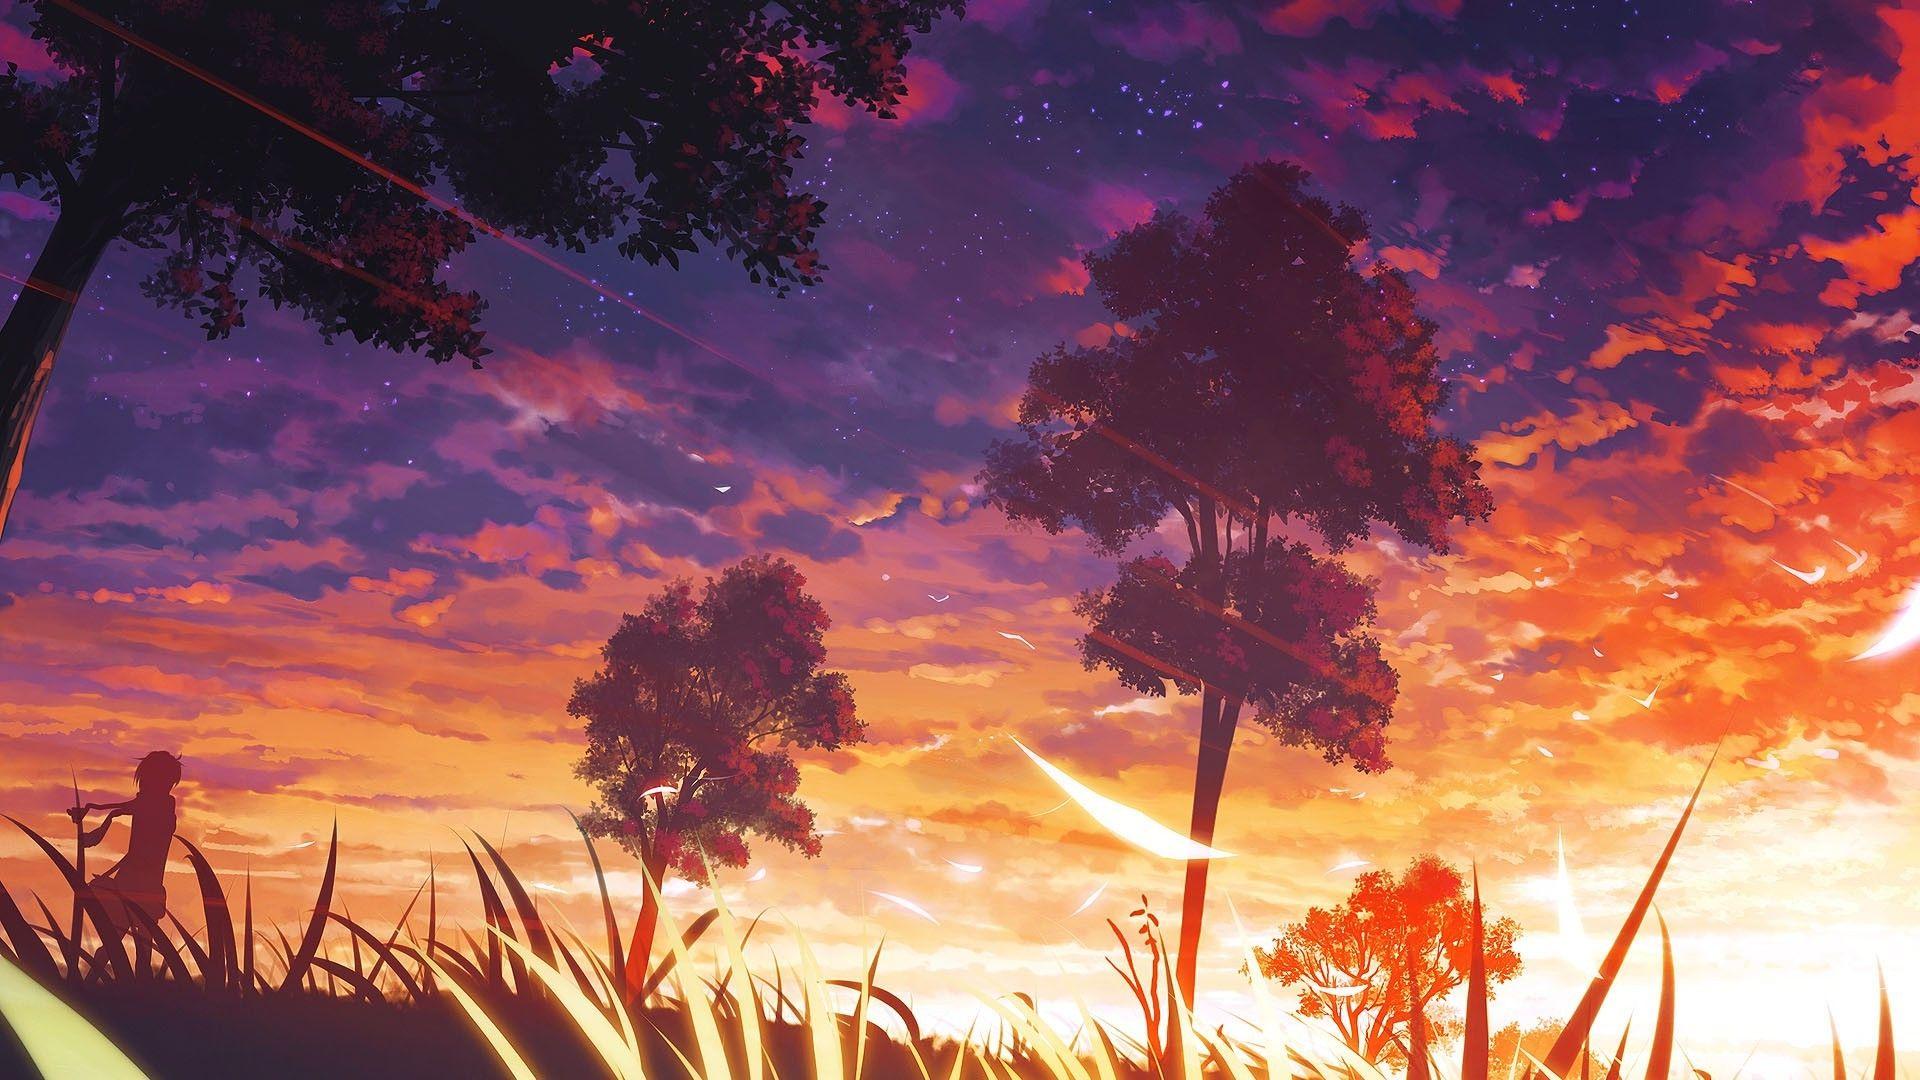 Bầu trời nền anime thực sự độc đáo và đẹp mắt, mang lại cảm giác như đang sống trong thế giới anime. Với những hình nền này, một bầu trời đầy màu sắc và tinh tế được thể hiện, sẽ khiến bạn cảm thấy thoải mái và đặc biệt. Hãy khám phá mọi chuyện mới mẻ với những hình ảnh tuyệt đẹp này.